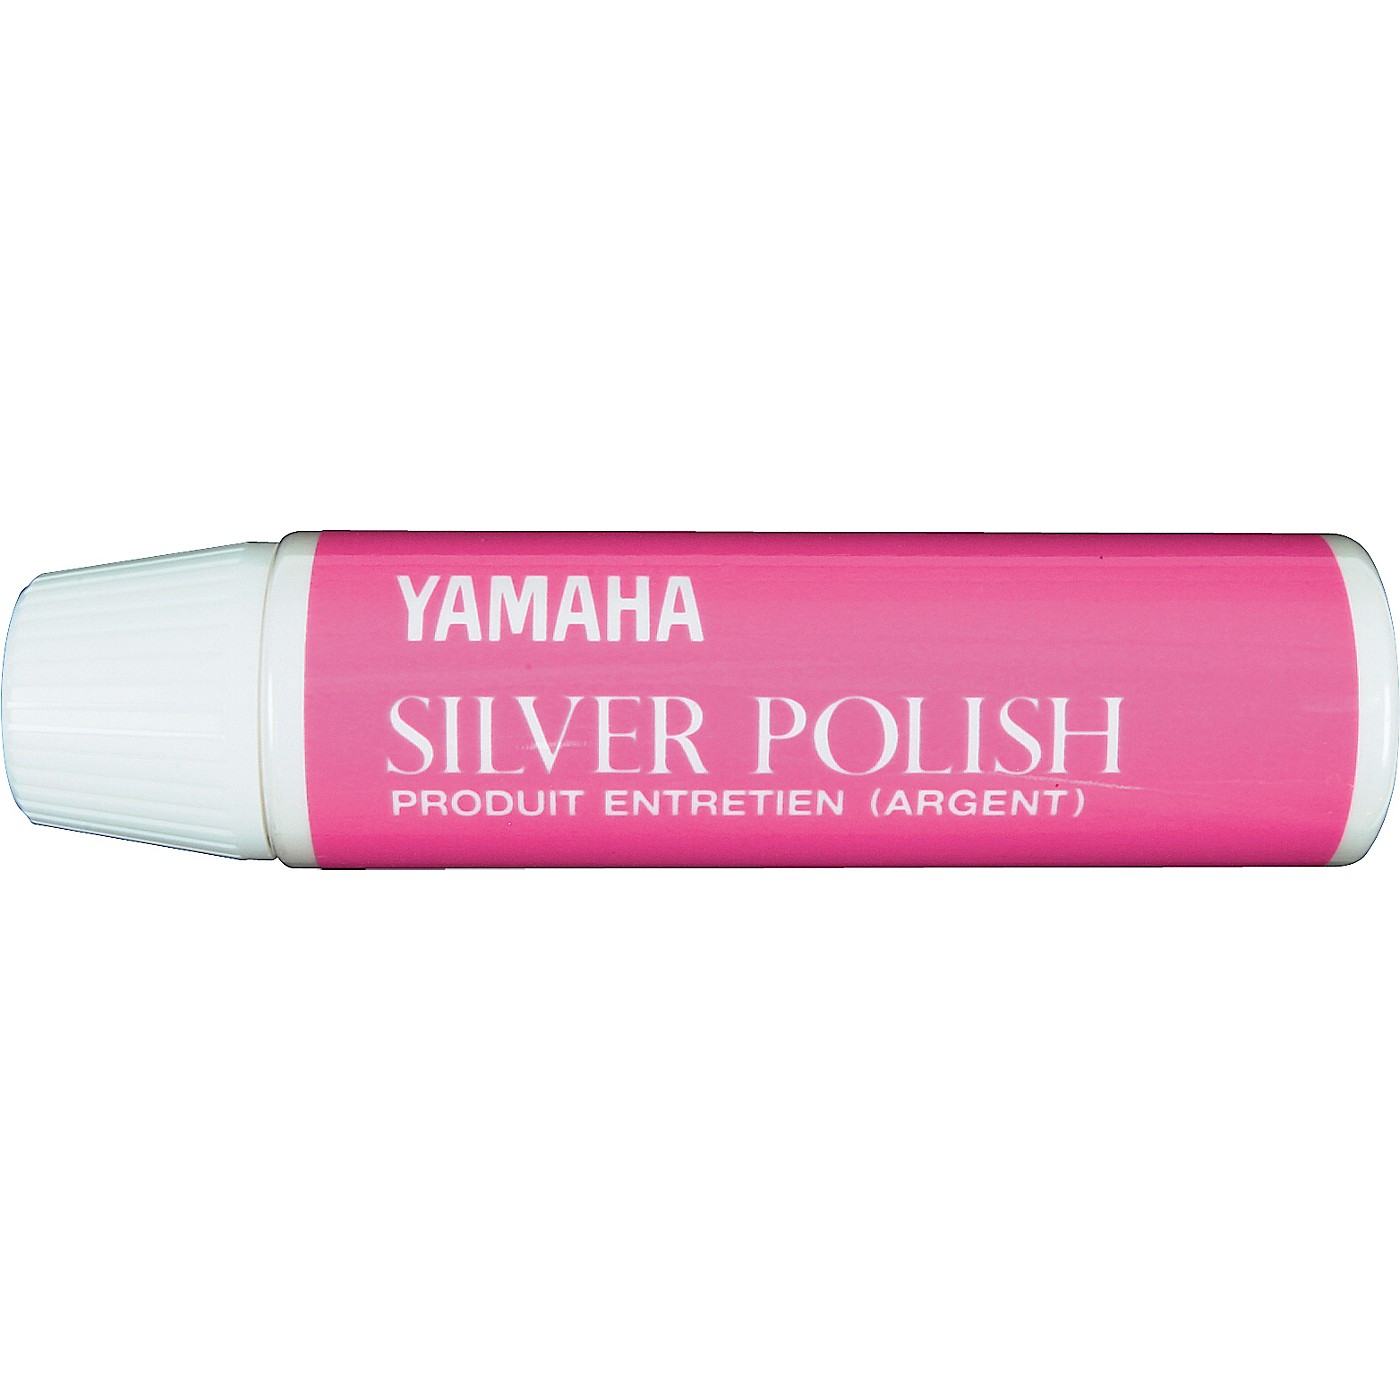 Yamaha Silver Polish thumbnail